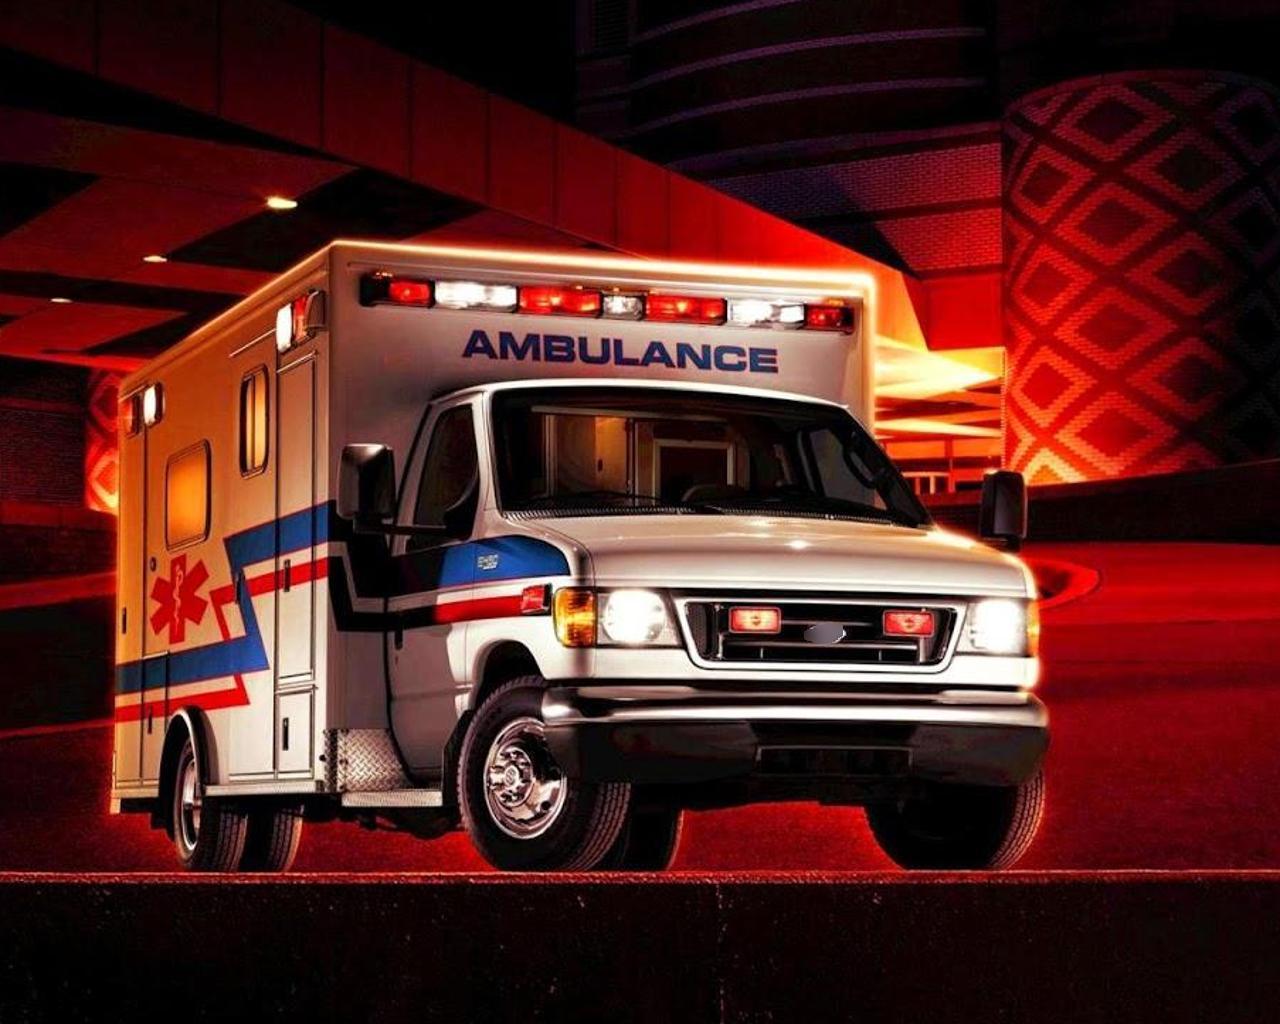 Fondos de pantalla de ambulancias - FondosMil